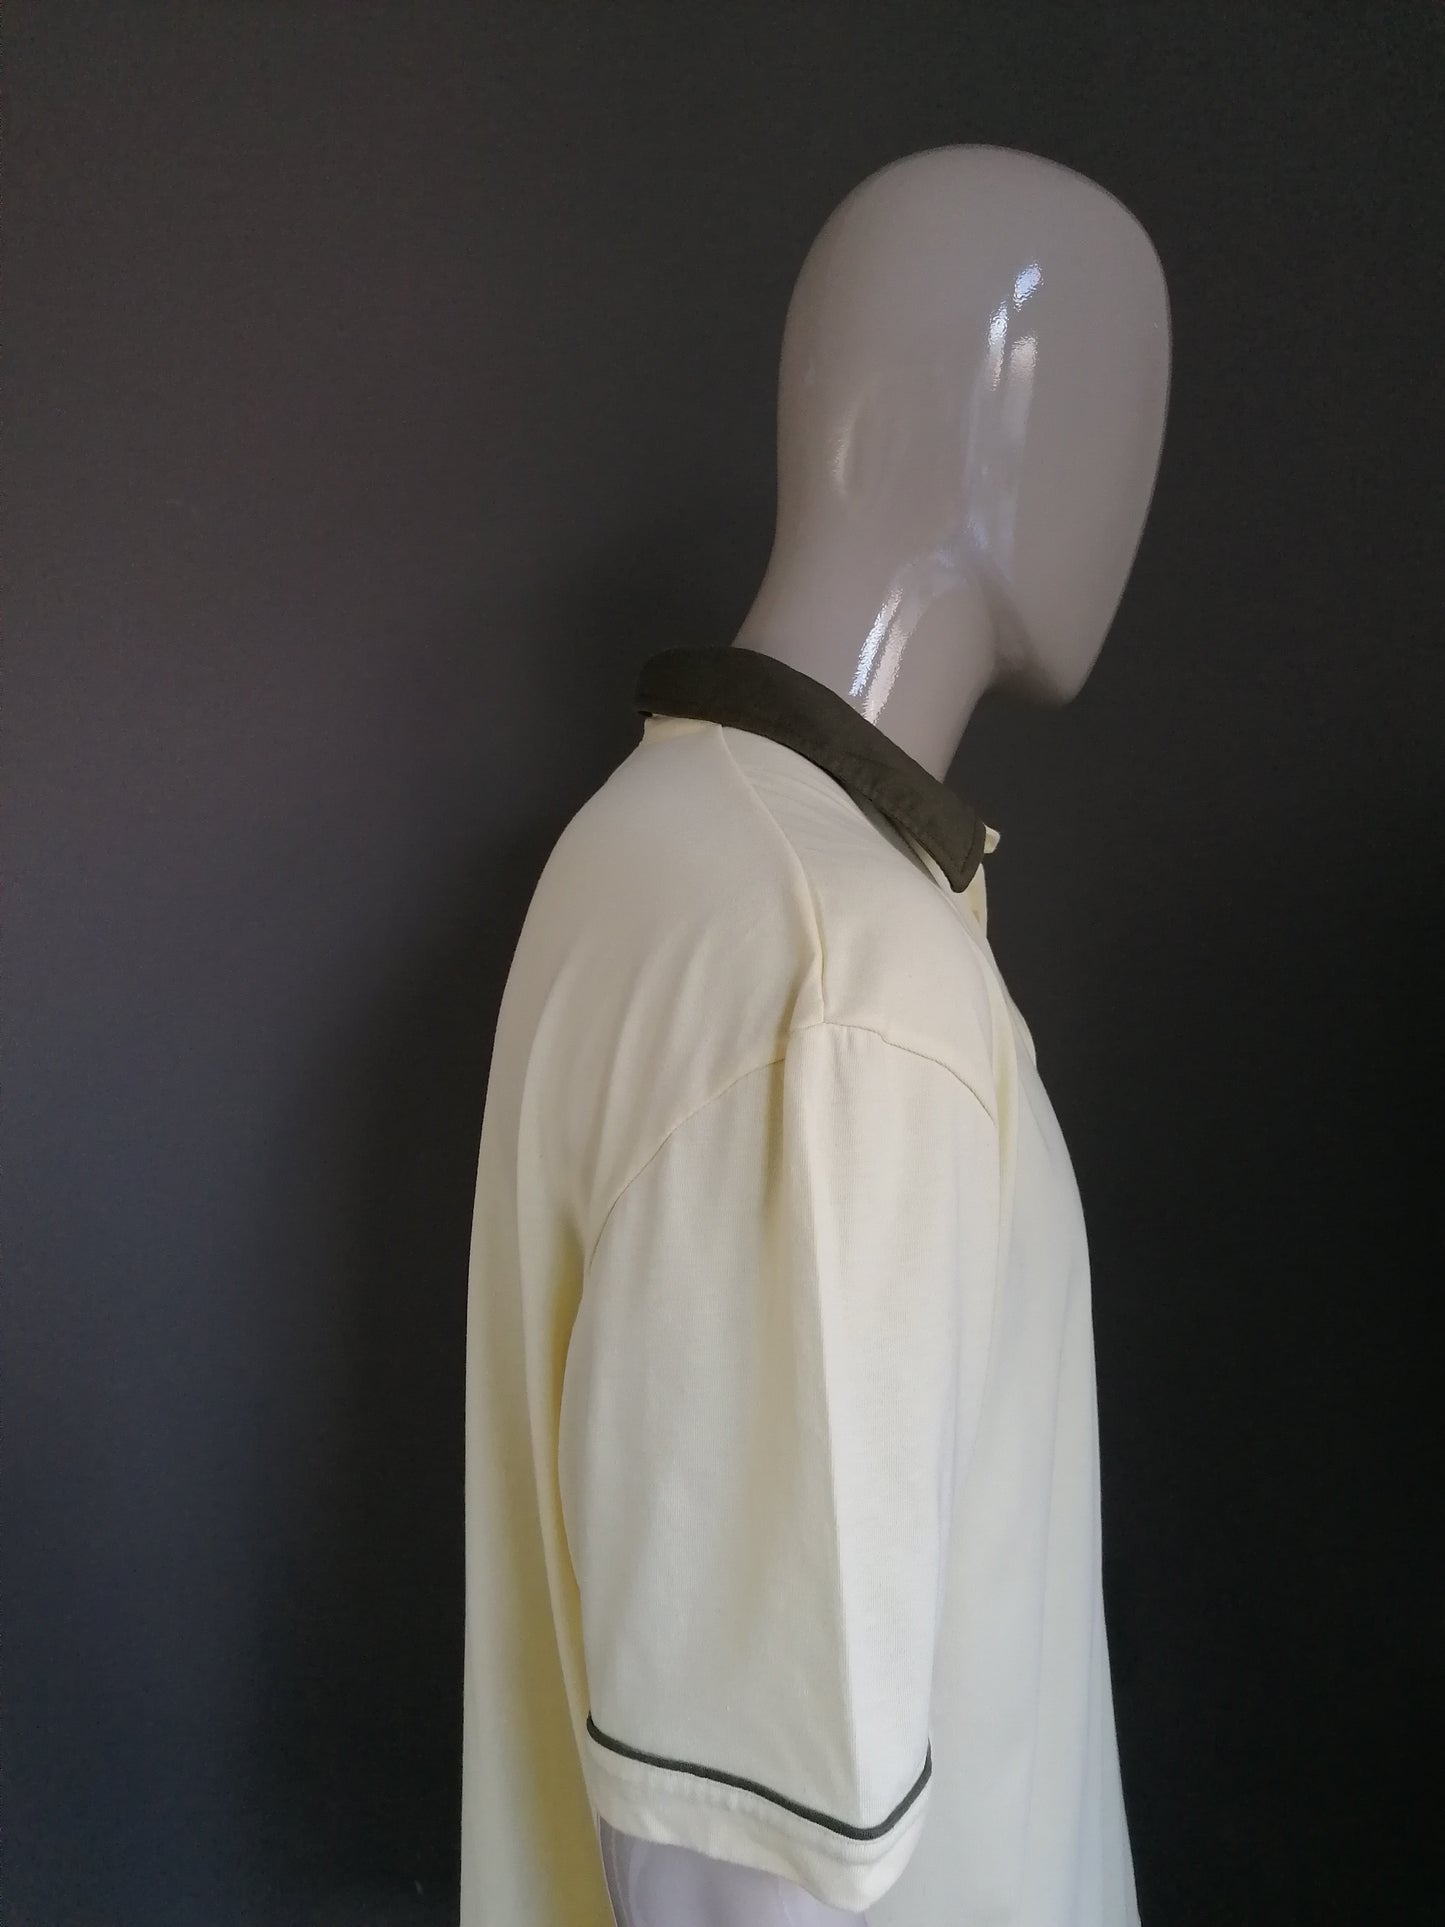 Vintage Roger kennt Polo mit Brusttasche und elastischem Band. Gelb grün gefärbt. Größe XL / XXL